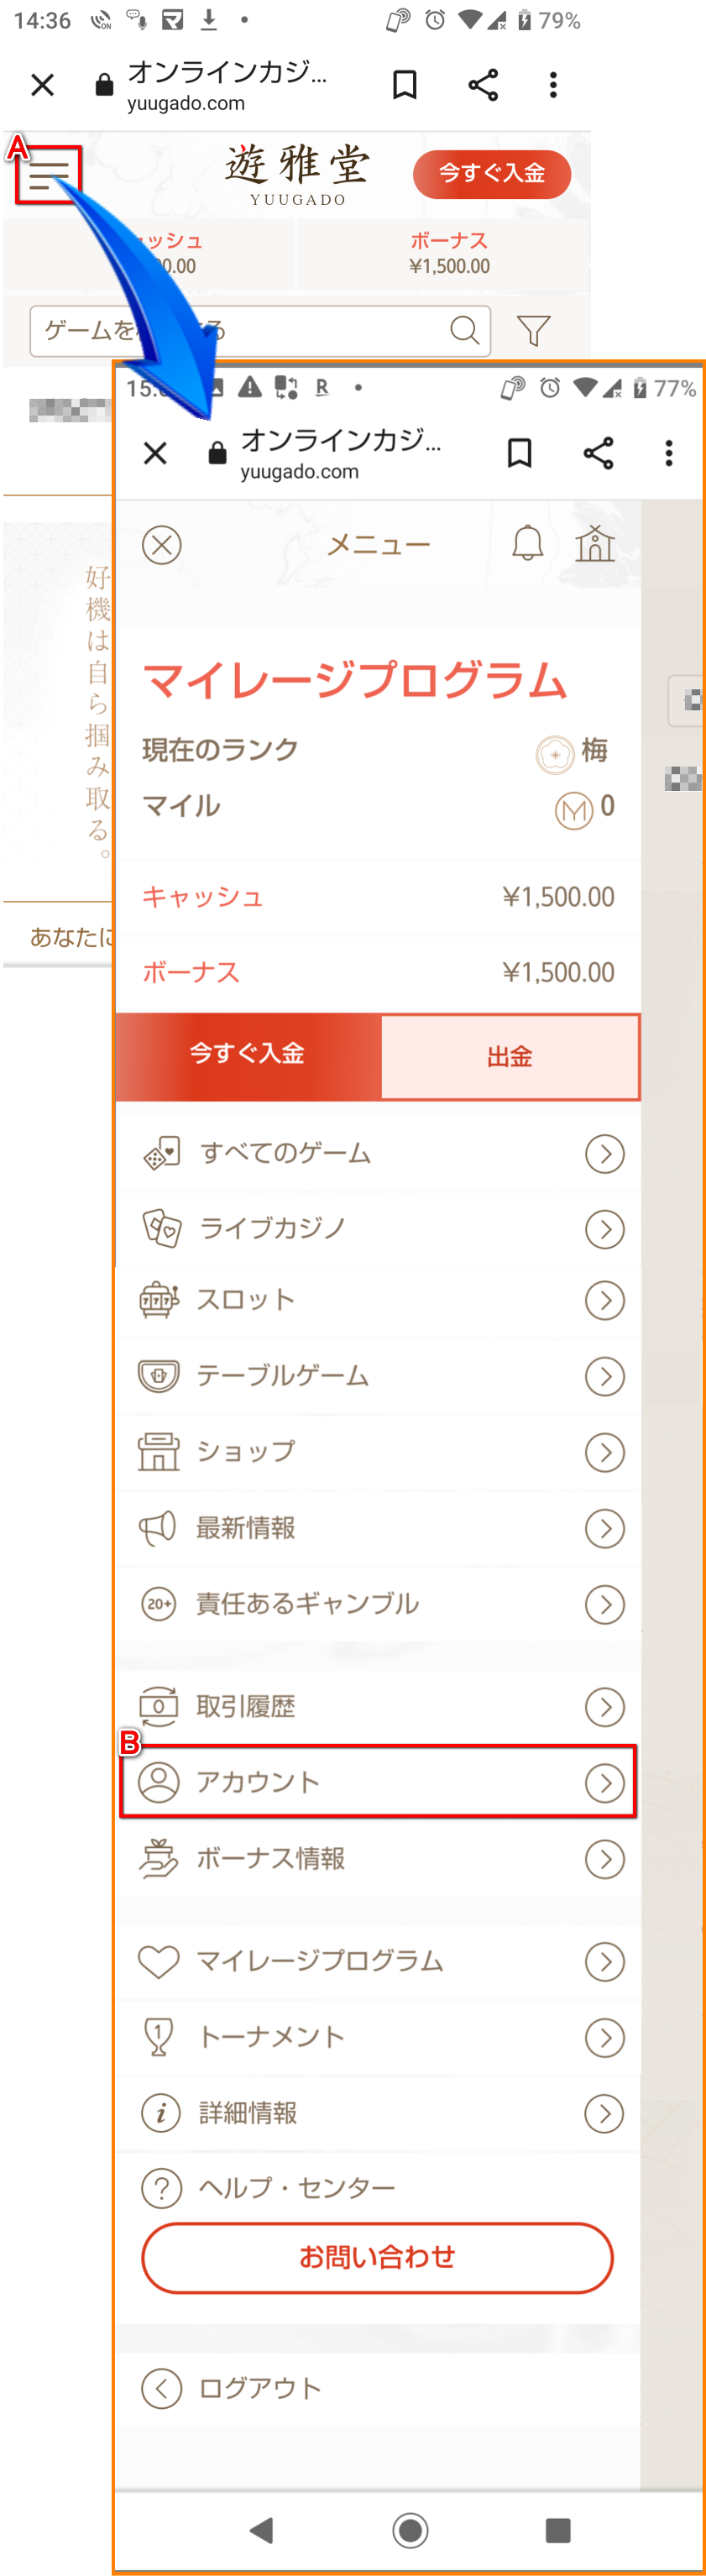 遊雅堂アカウント認証スマートフォンページ